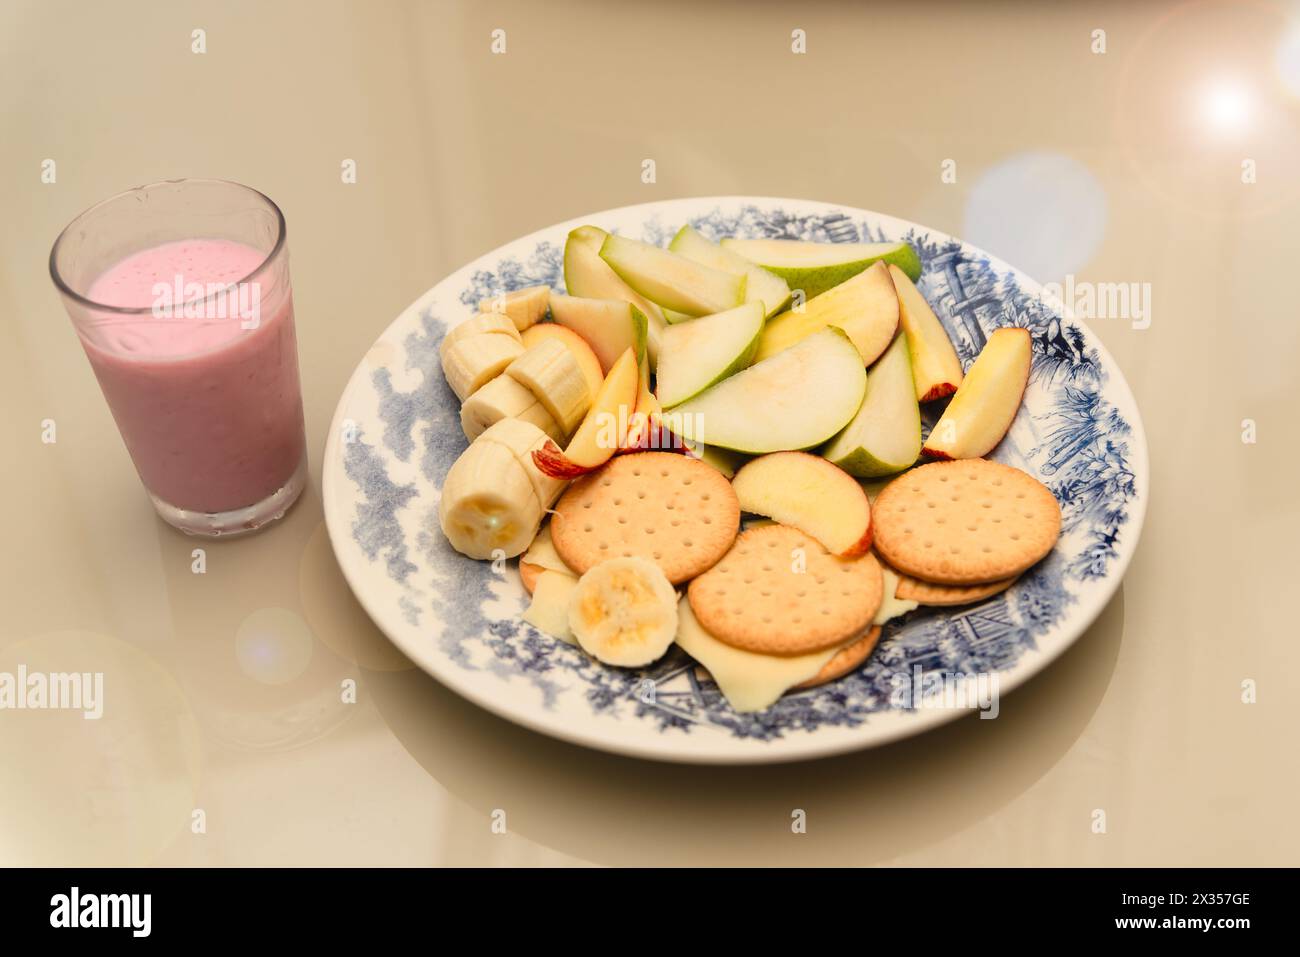 Assiette de nourriture avec banane, pomme, poire, biscuit, fromage et yaourt. Petit déjeuner sain. Régime alimentaire Banque D'Images